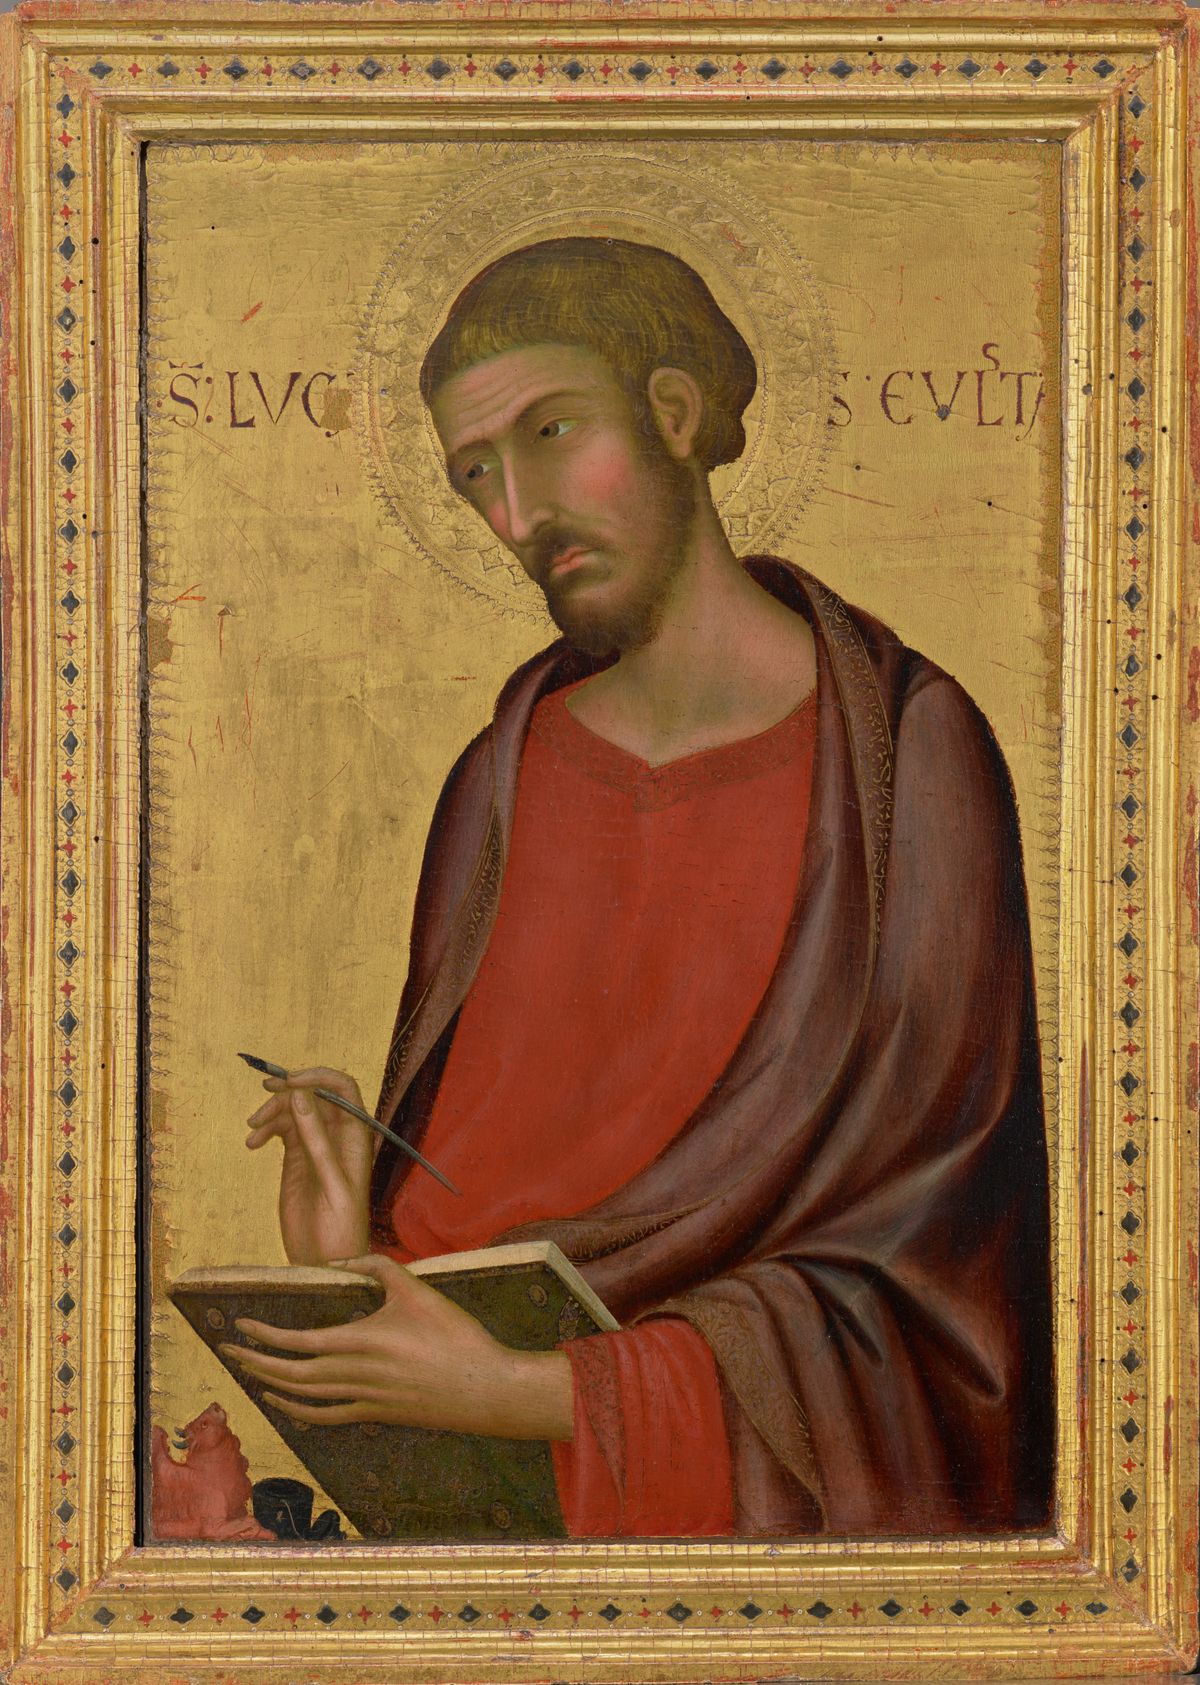 Saint Luke by Simone Martini (1330s?) - Public Domain Catholic Painting